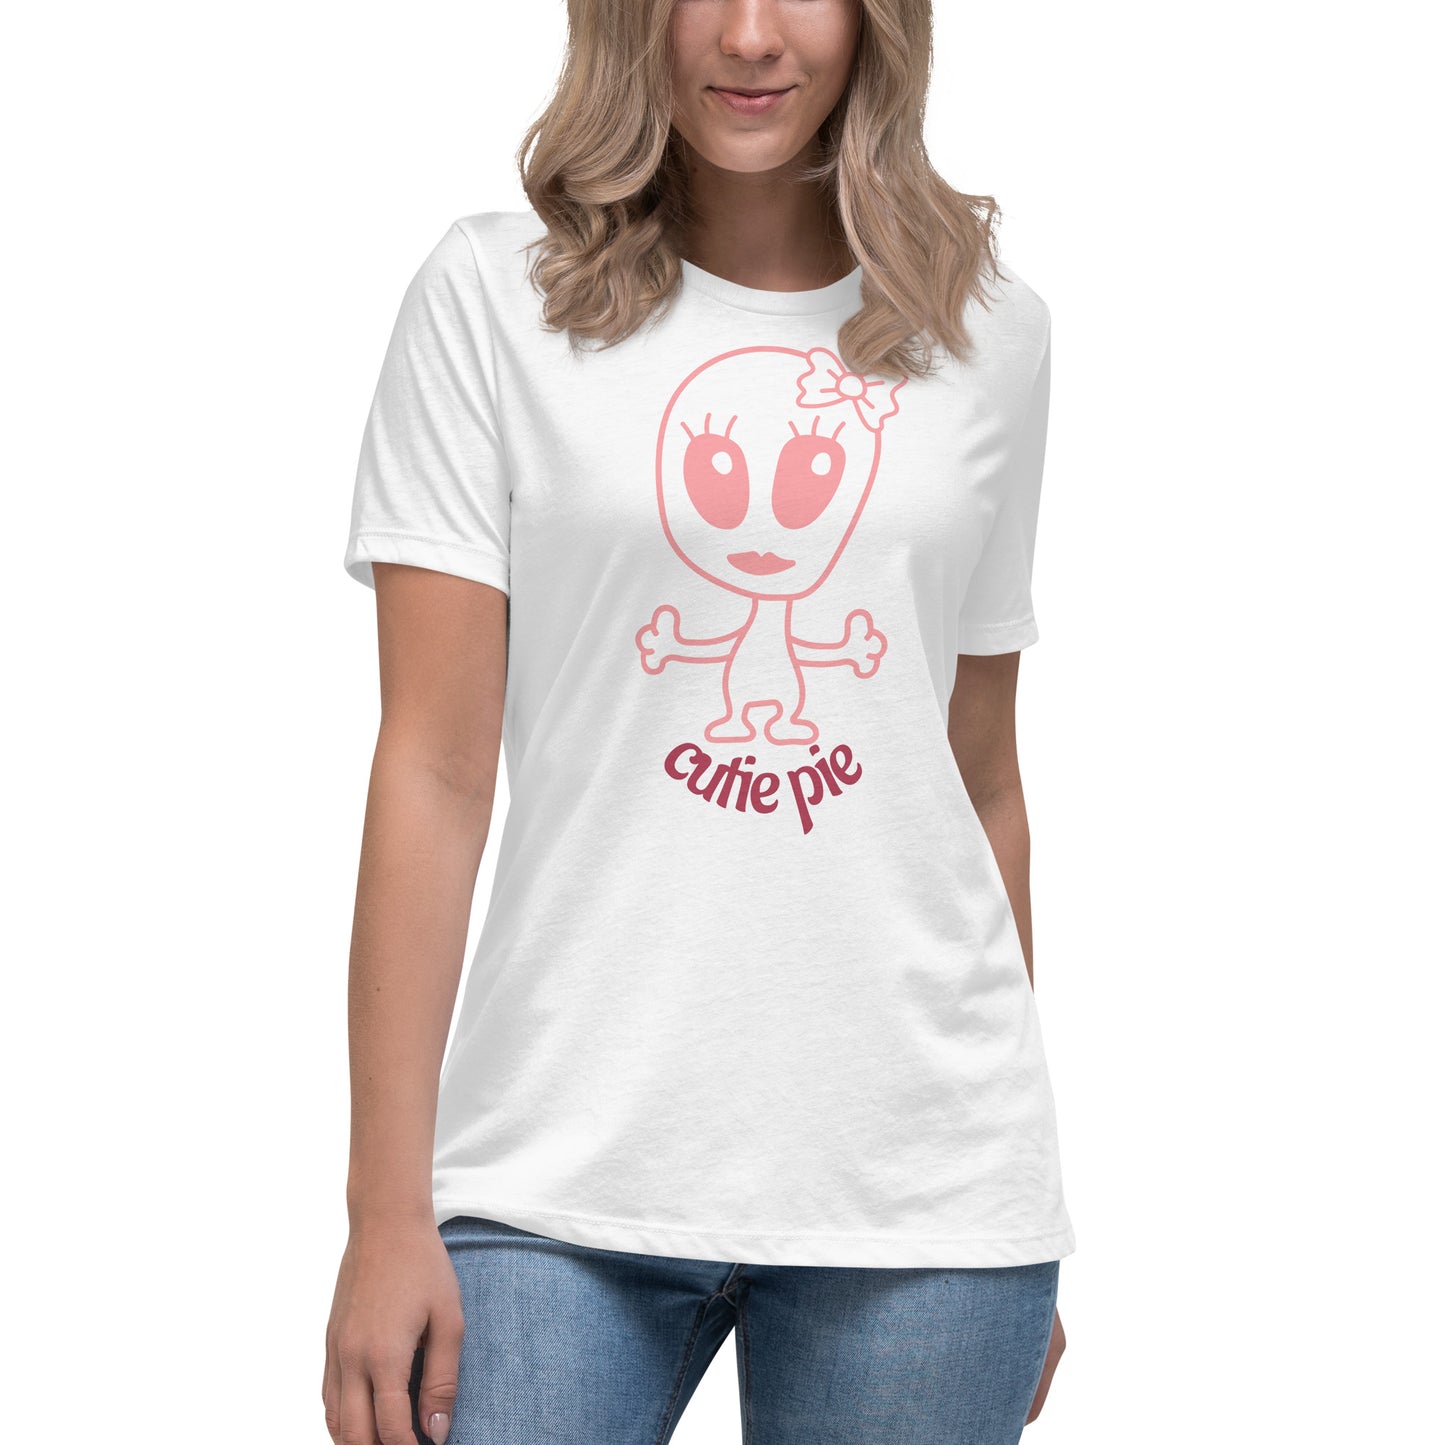 Cutie Pie Women's Relaxed T-Shirt